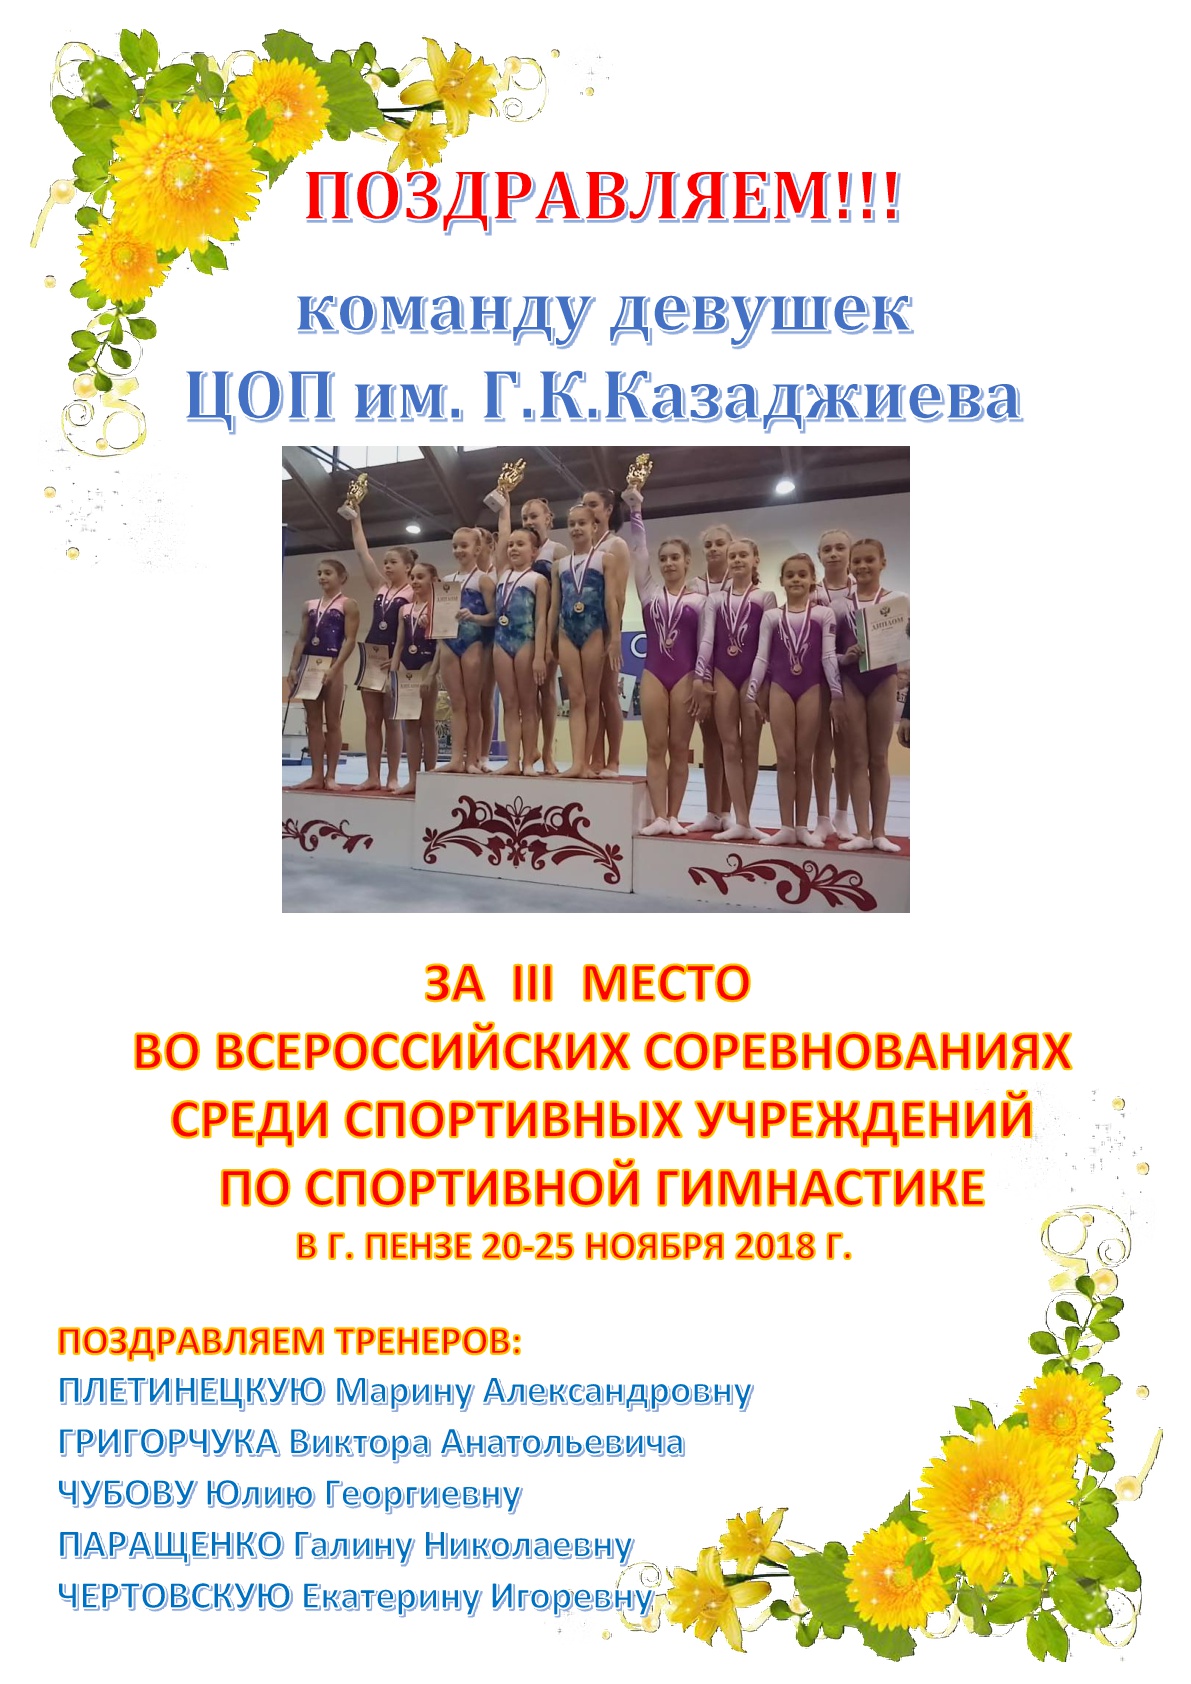 Поздравляем команду девушек ЦОП им. Г.К. Казаджиева!